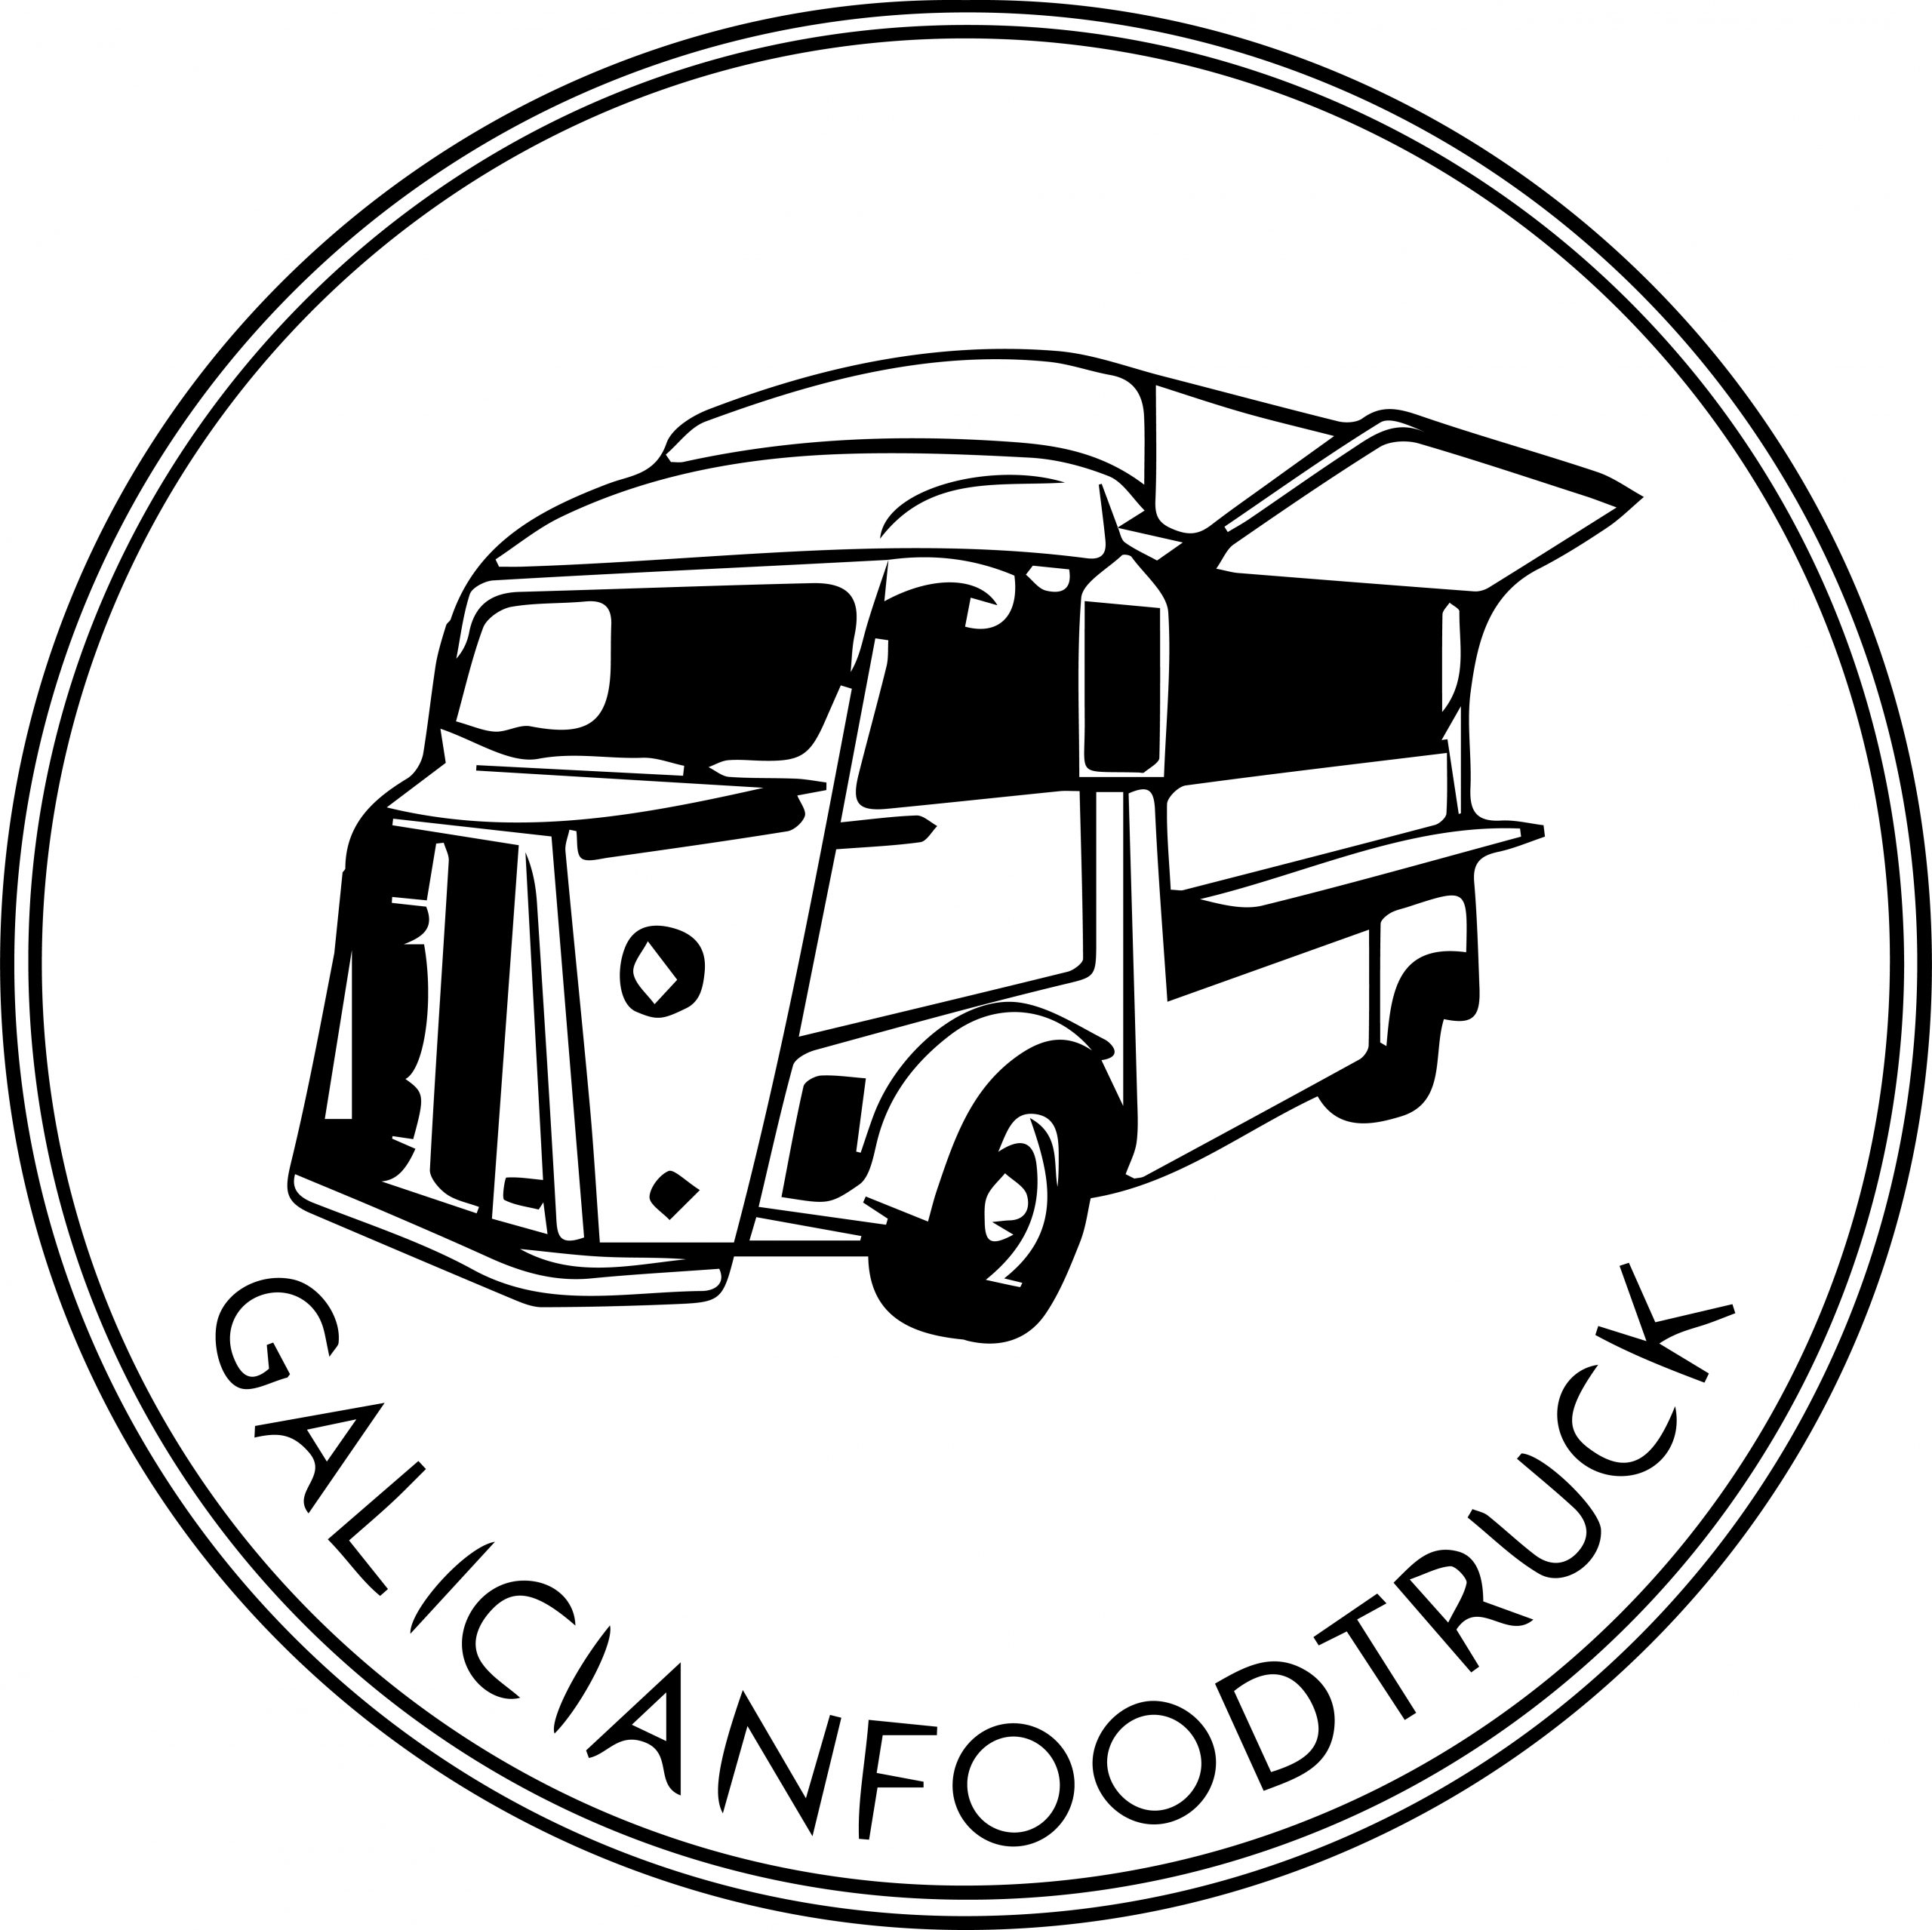 Galician Foodtruck